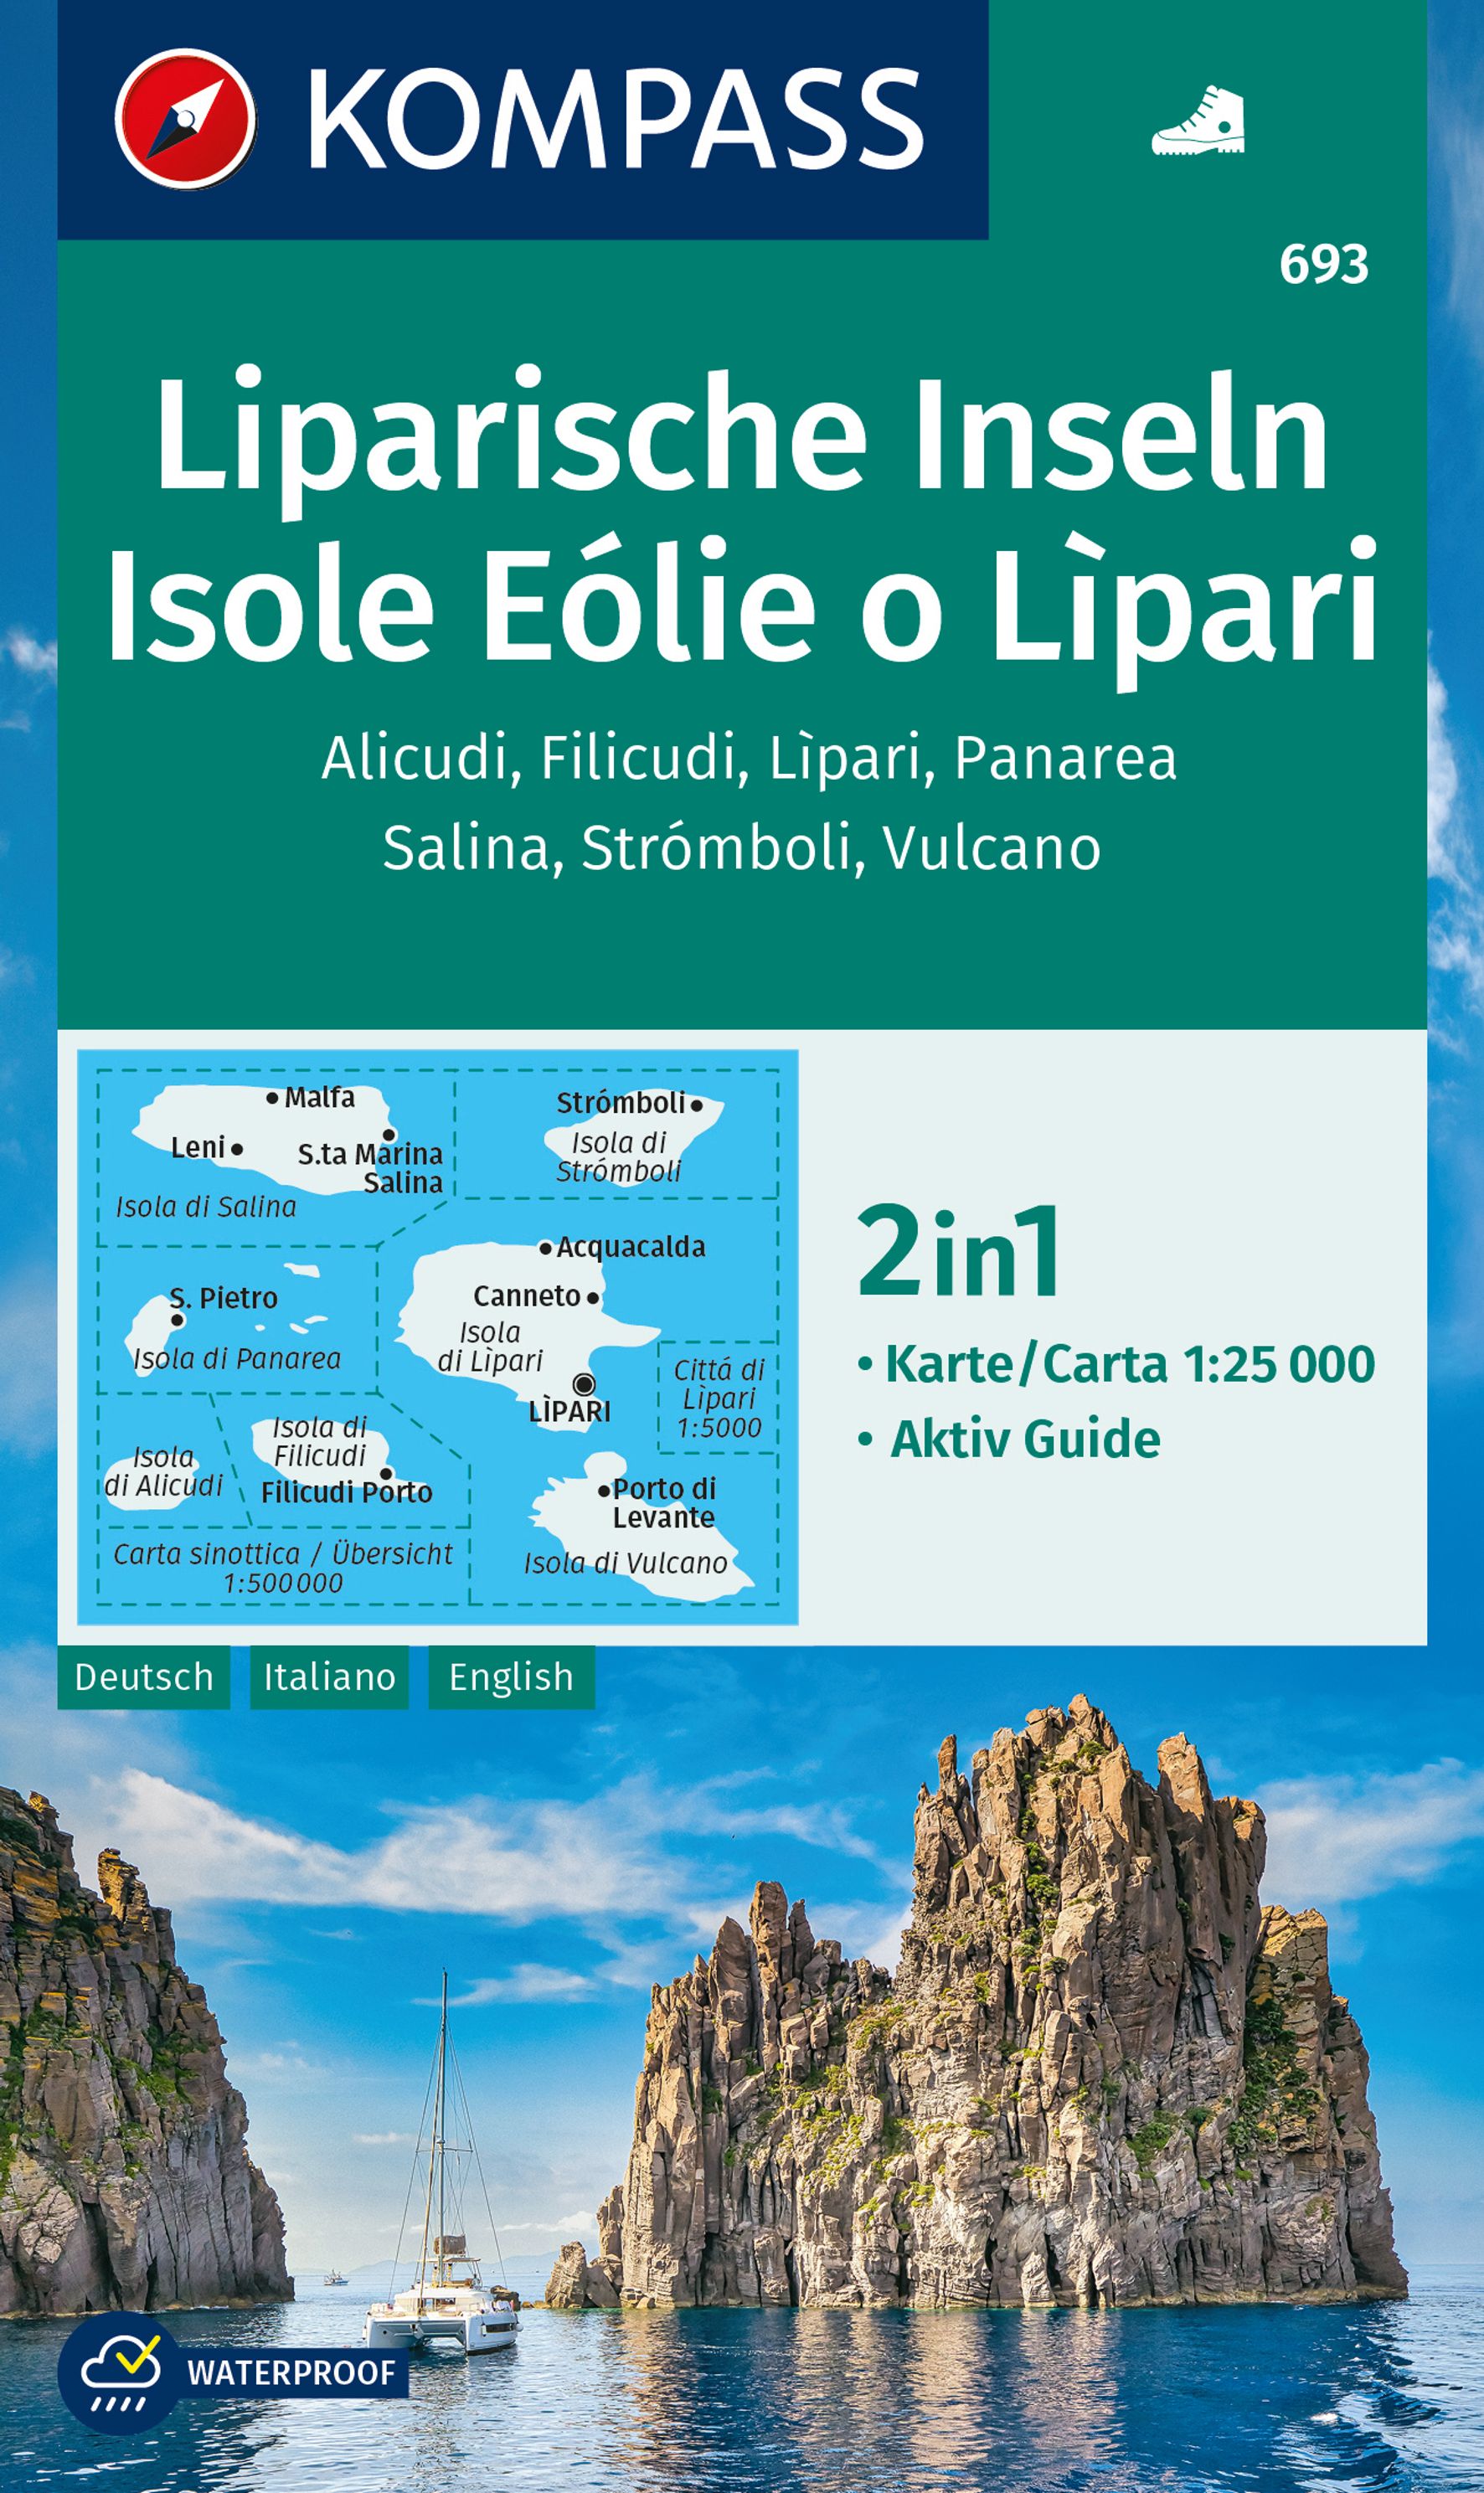 Liparische Inseln - Liparské ostrovy (Kompass - 693) - turistická mapa